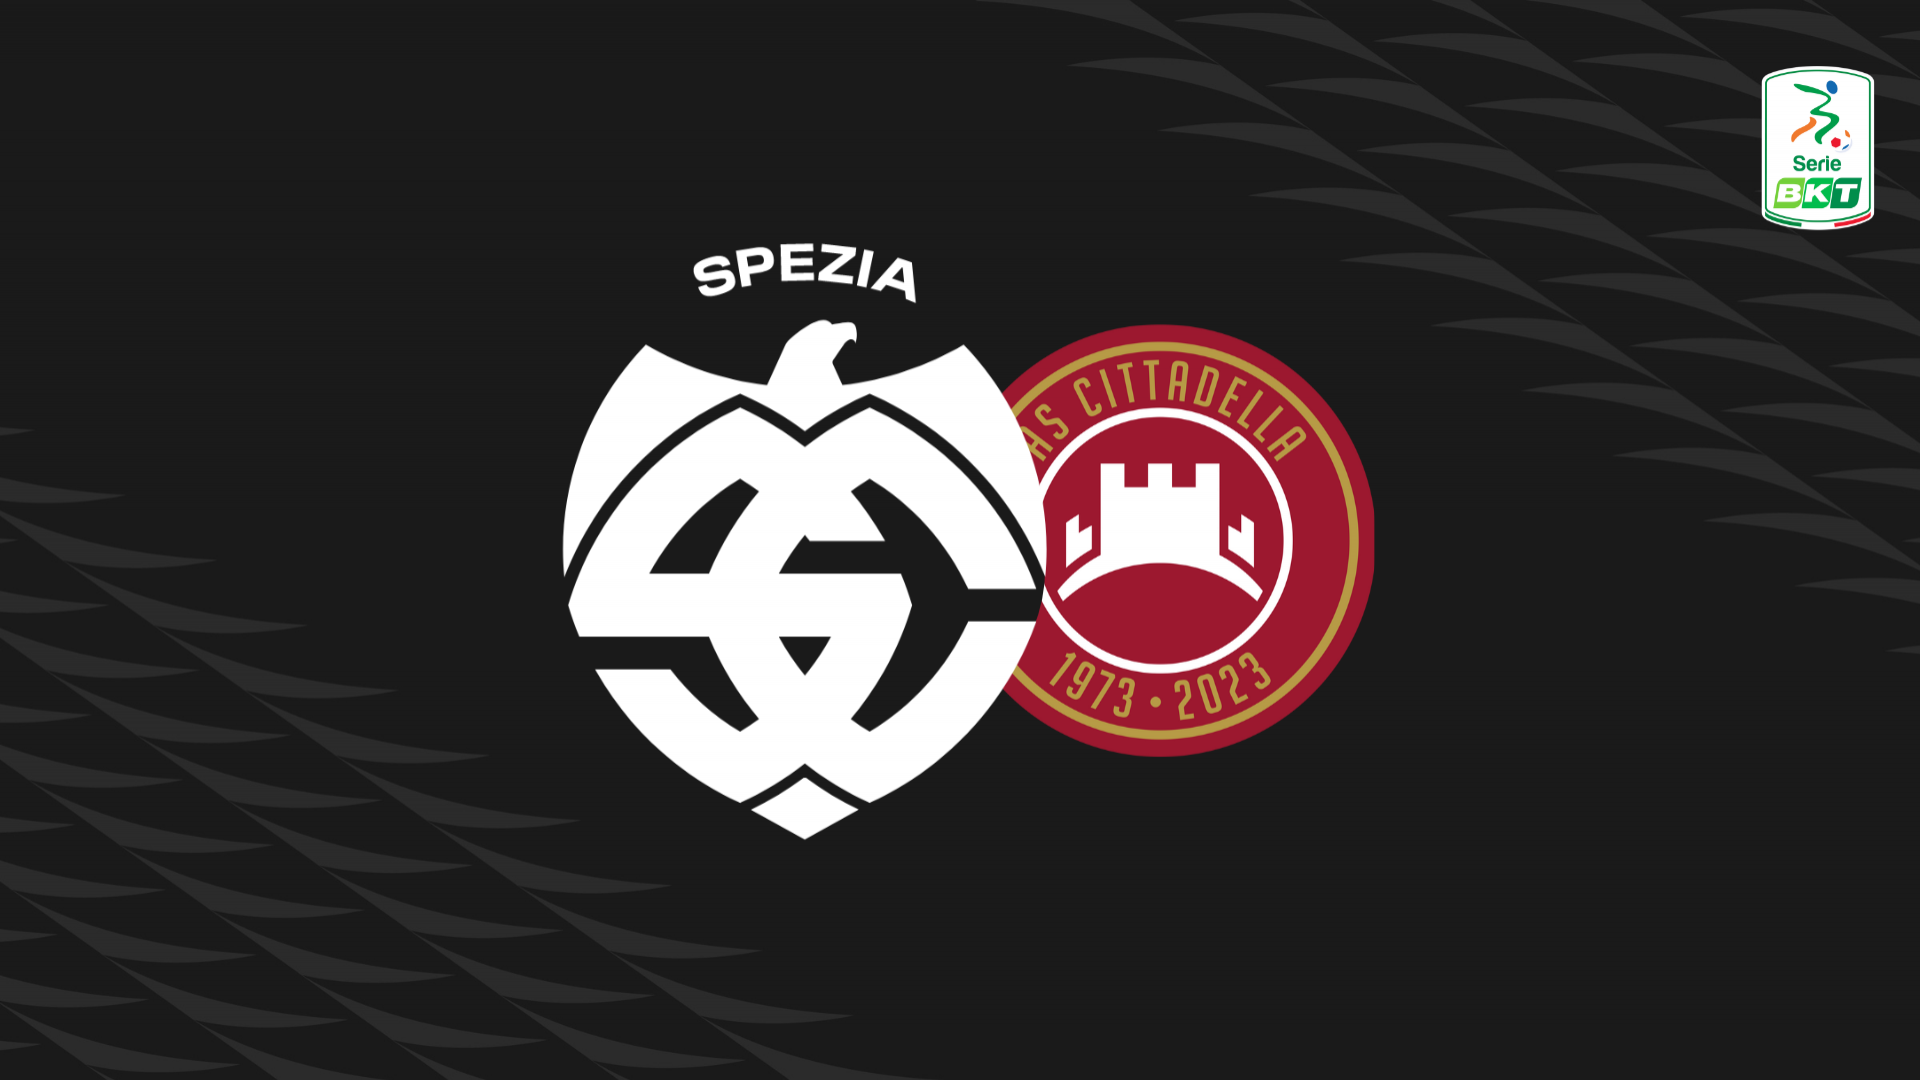 Serie BKT: Spezia-Cittadella 4-2